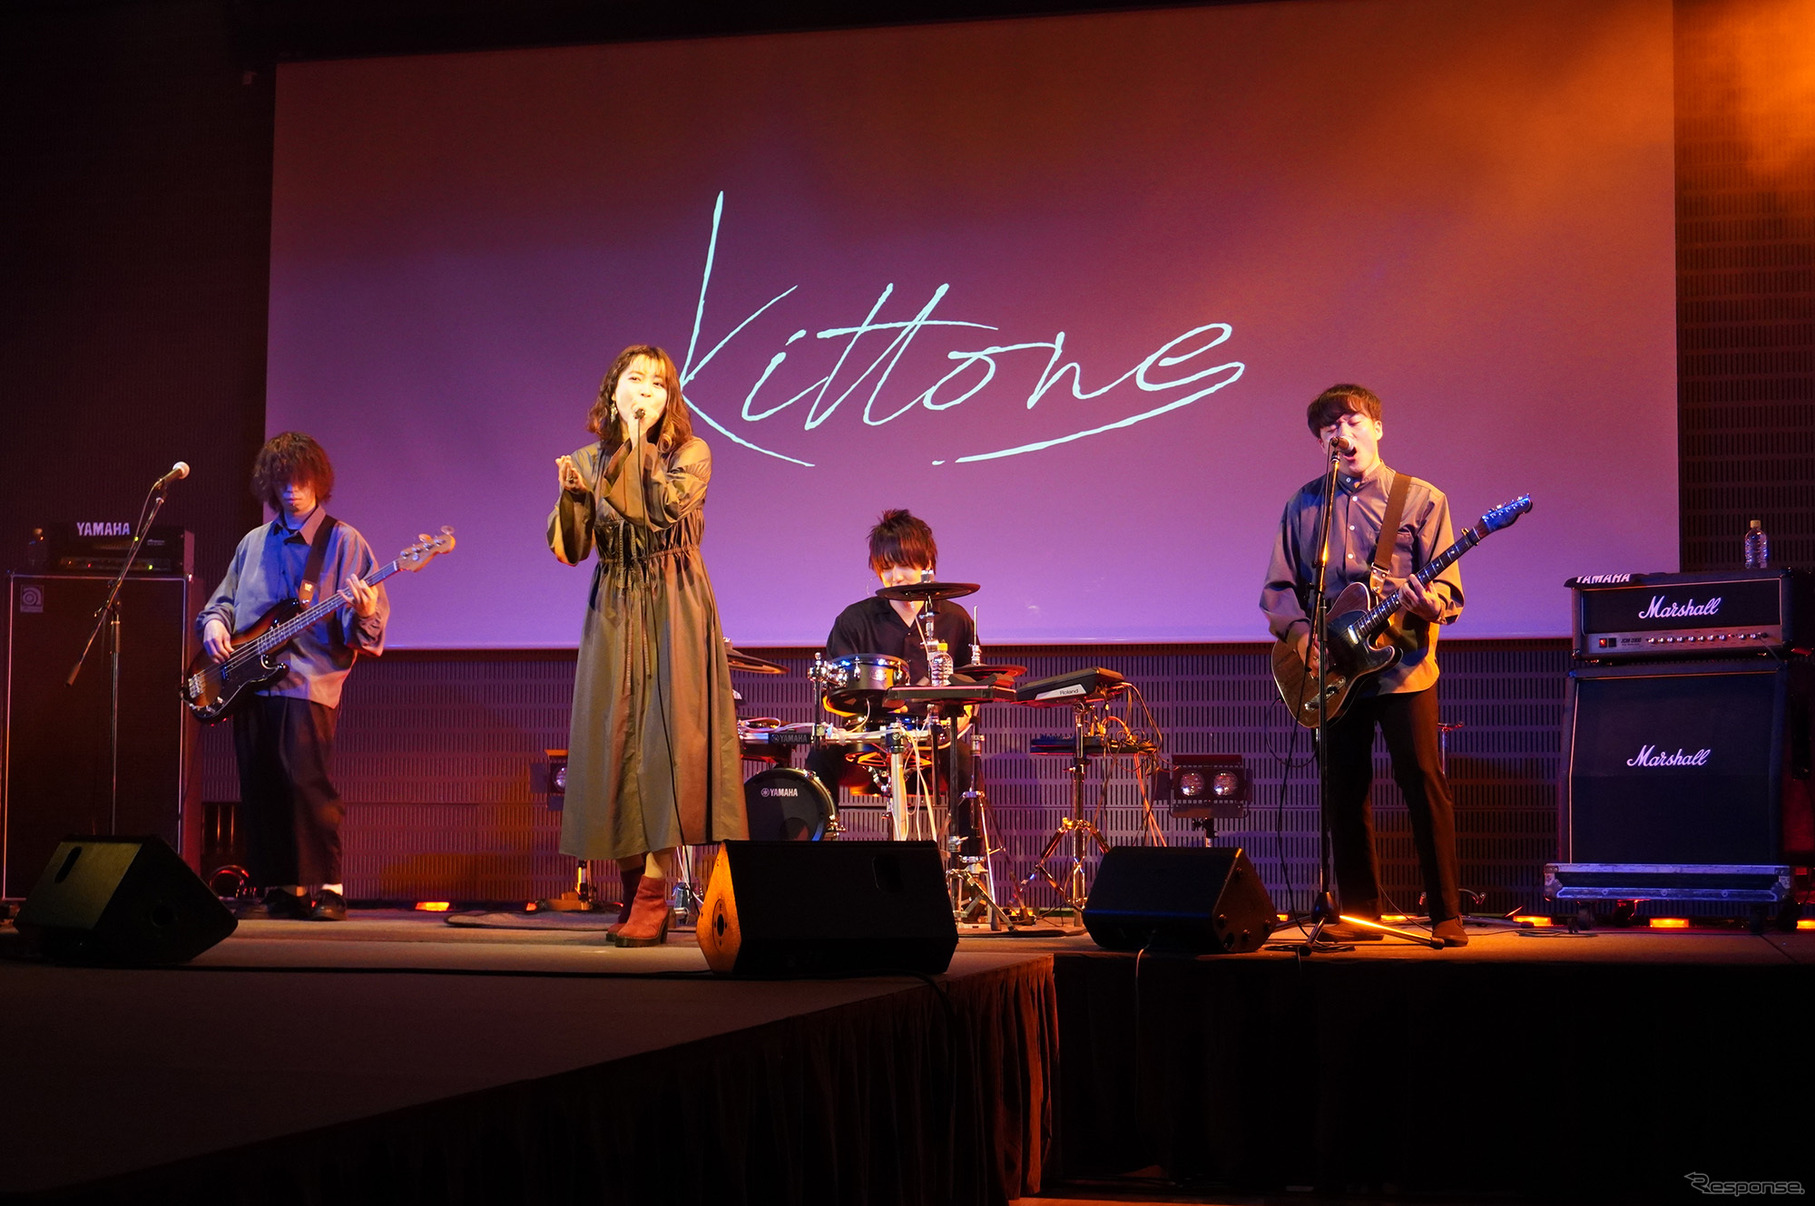 発表会ではもうひとつのコラボとして、新進気鋭のバンド「kittone」のライブもおこなわれた